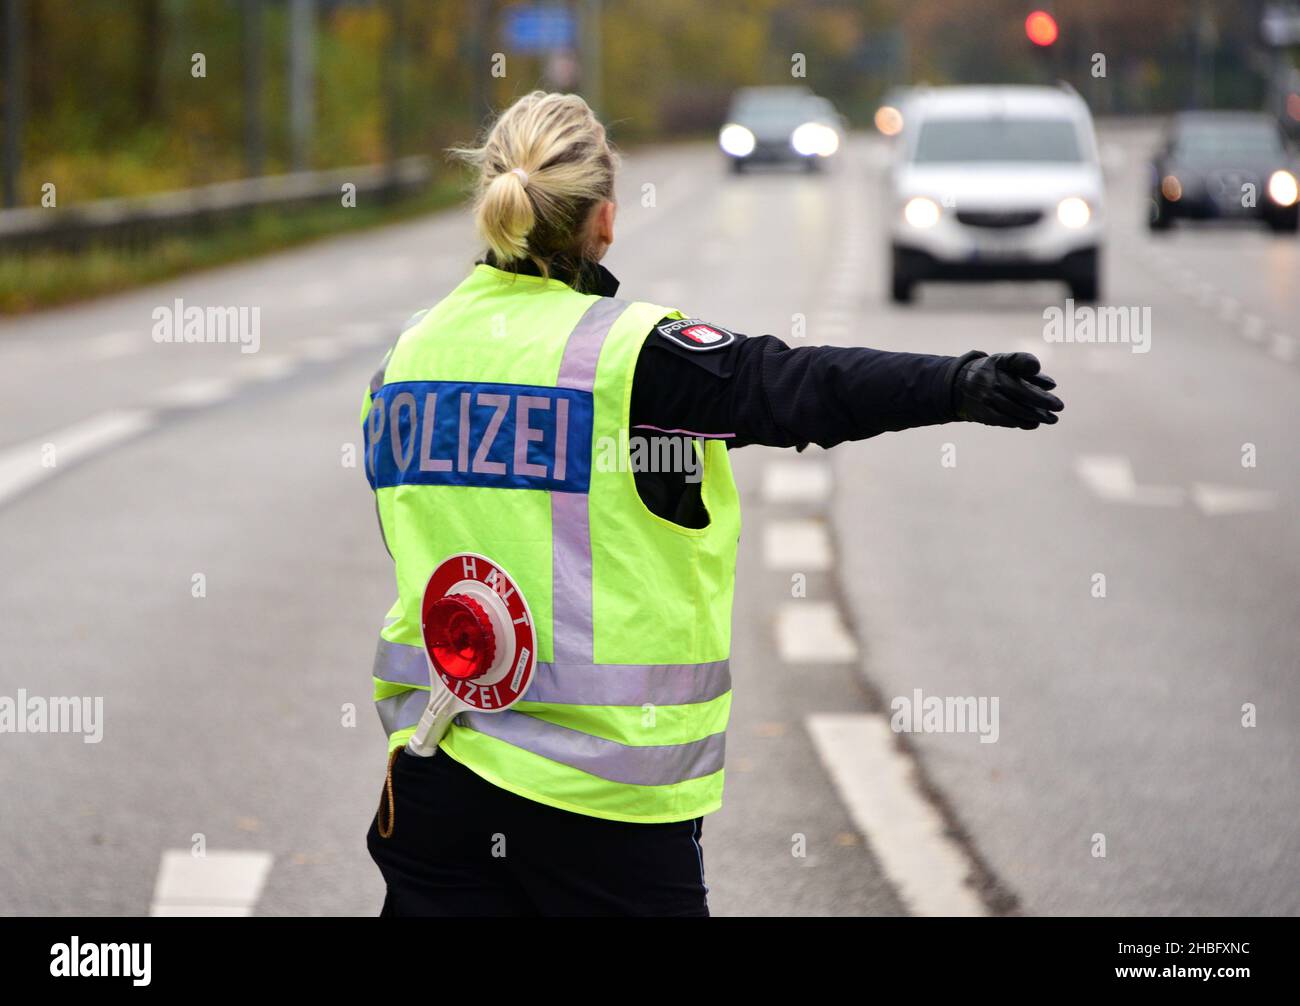 Polizeikelle Halt Polizei Anhaltestab Stock Photo